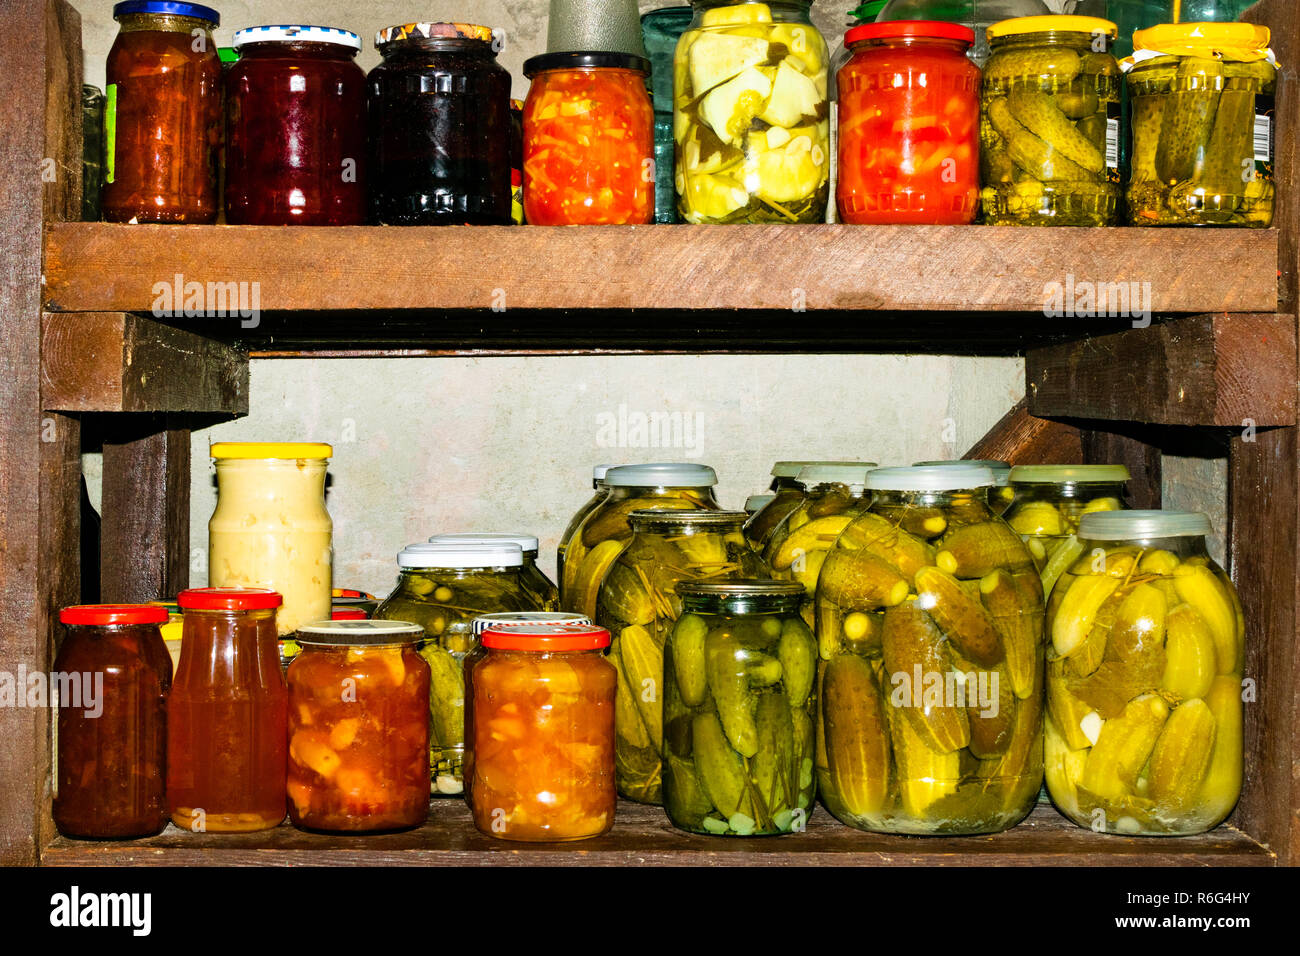 Gläser mit eingelegtem Gemüse, fruchtig, Kompott und Marmelade im Keller  Stockfotografie - Alamy